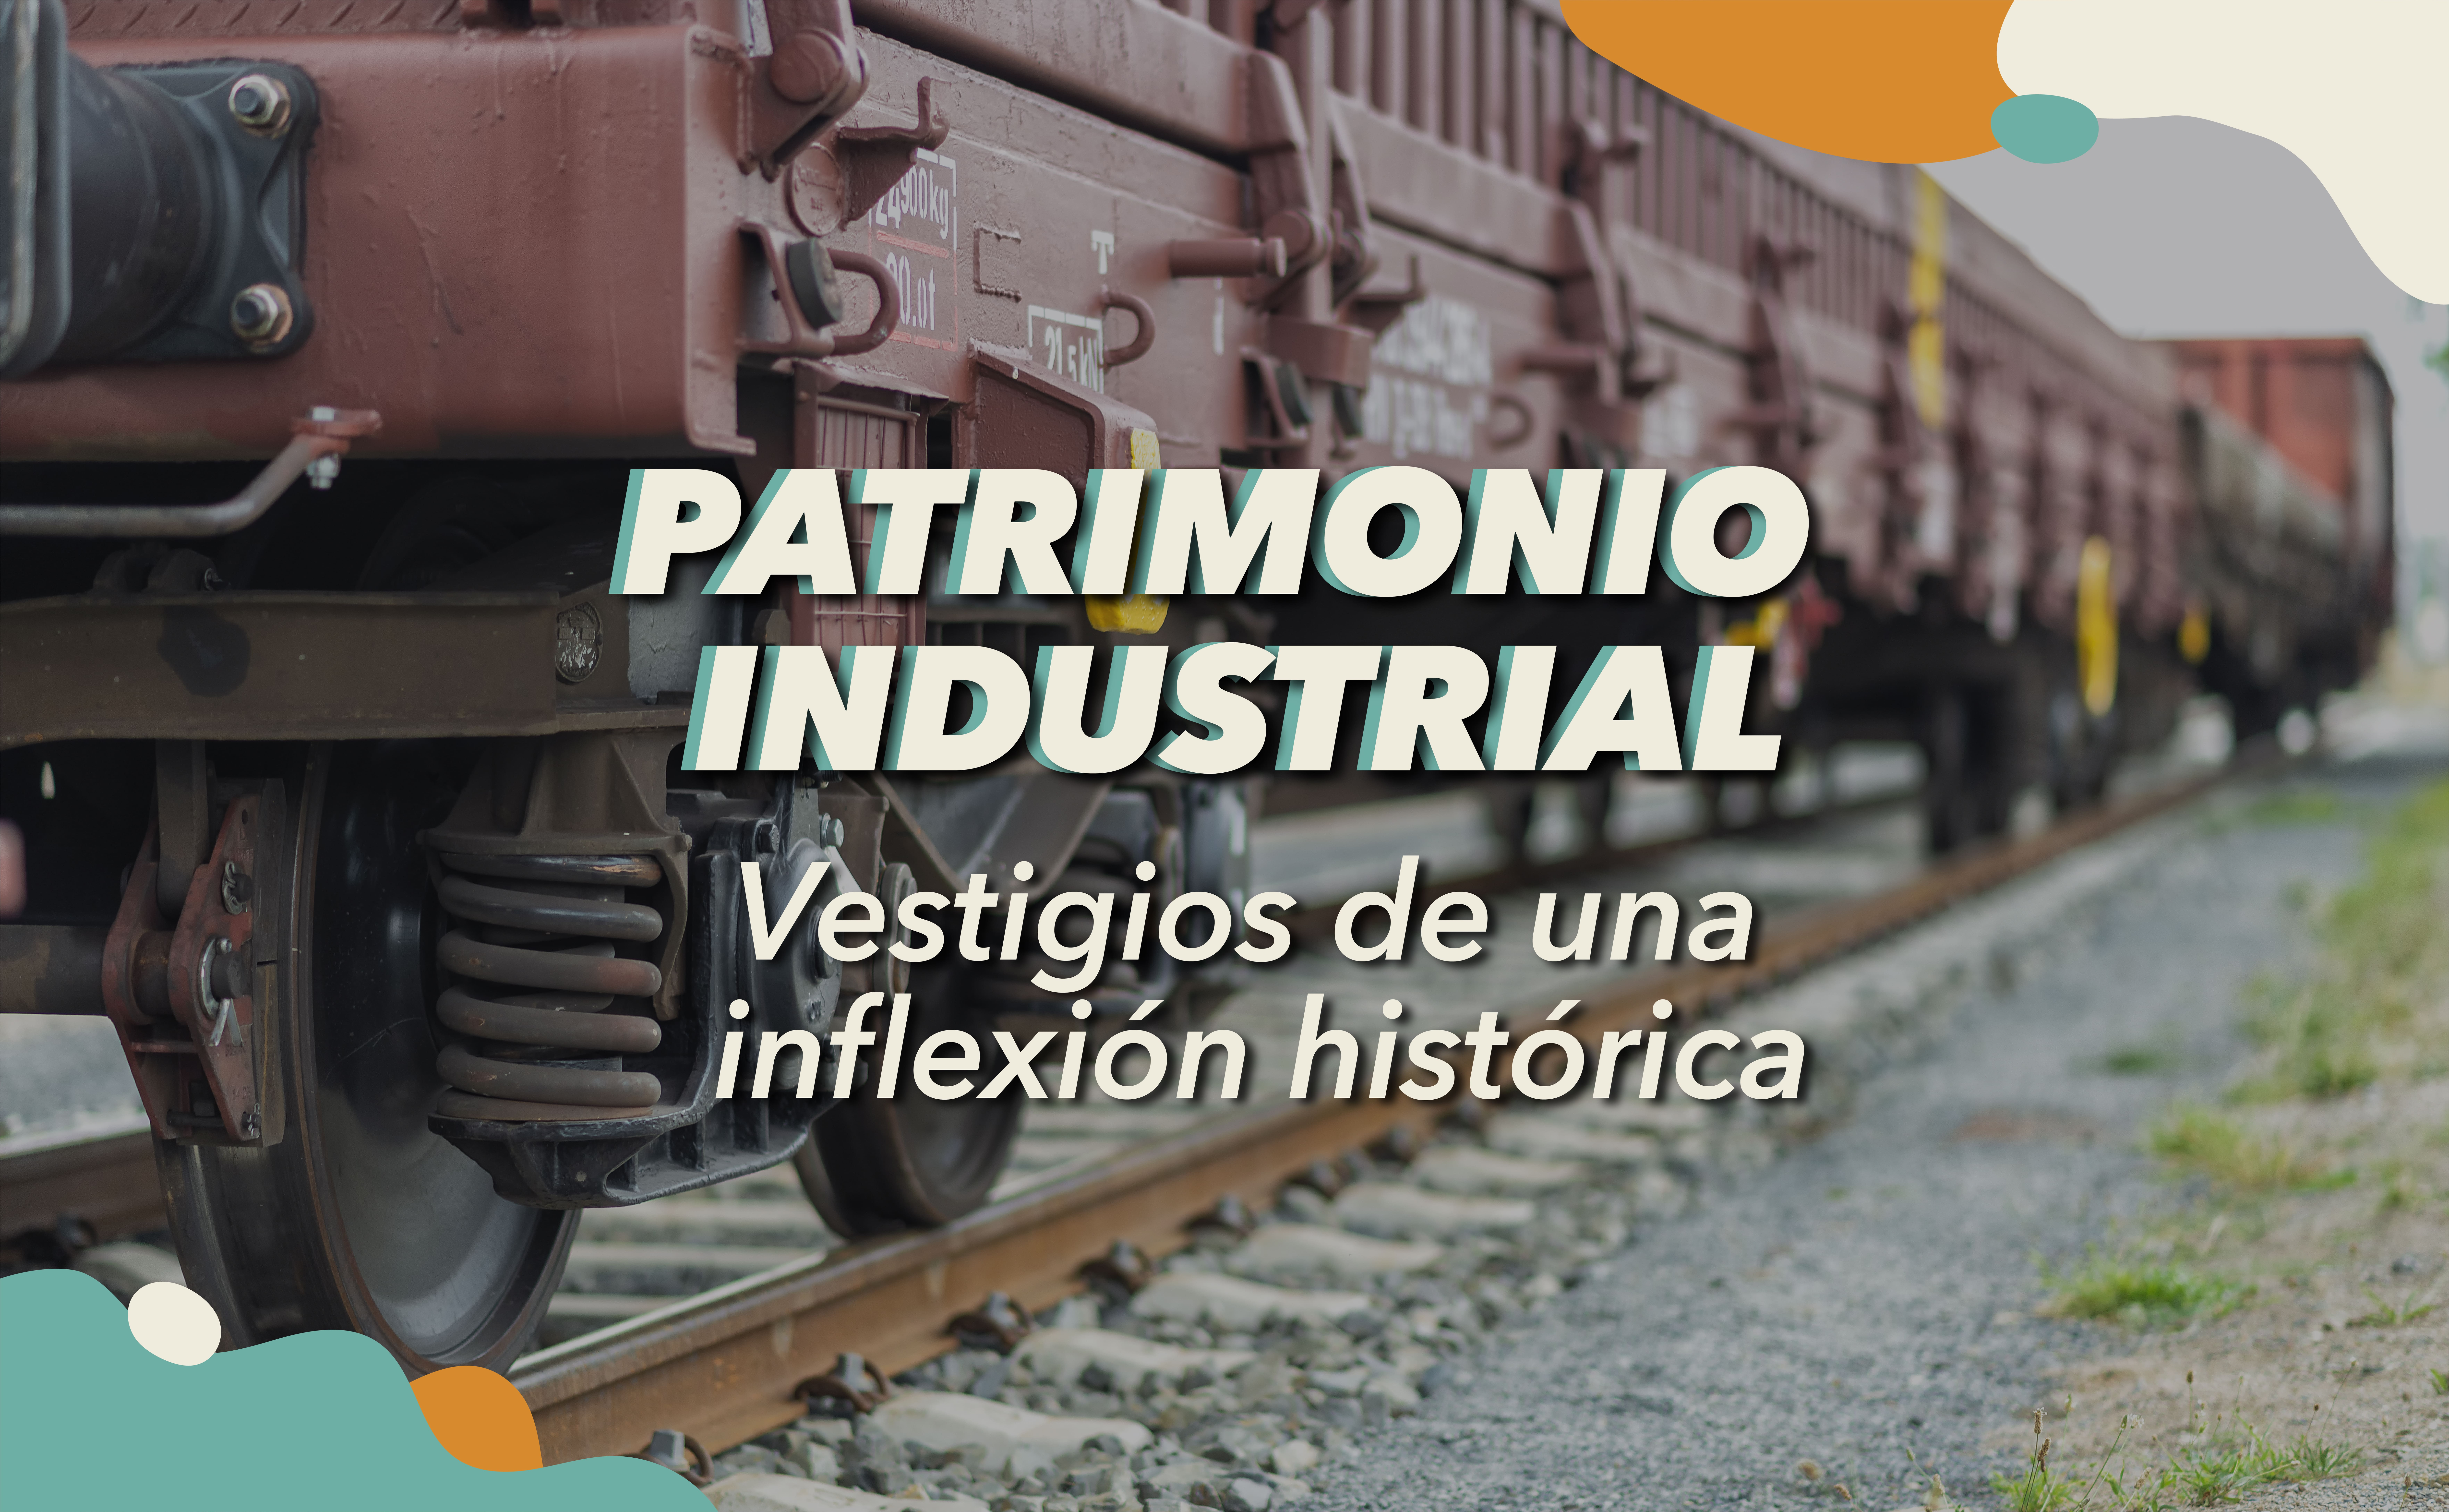 Patrimonio industrial: vestigios de una inflexión histórica.